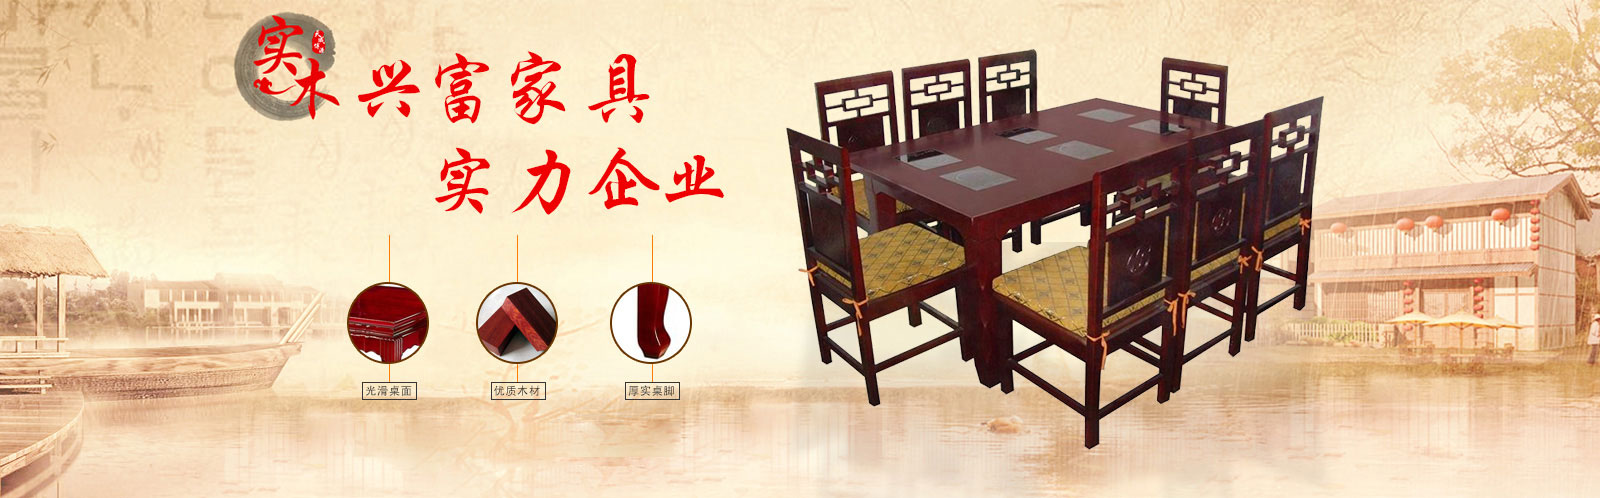 重慶火鍋桌椅廠家